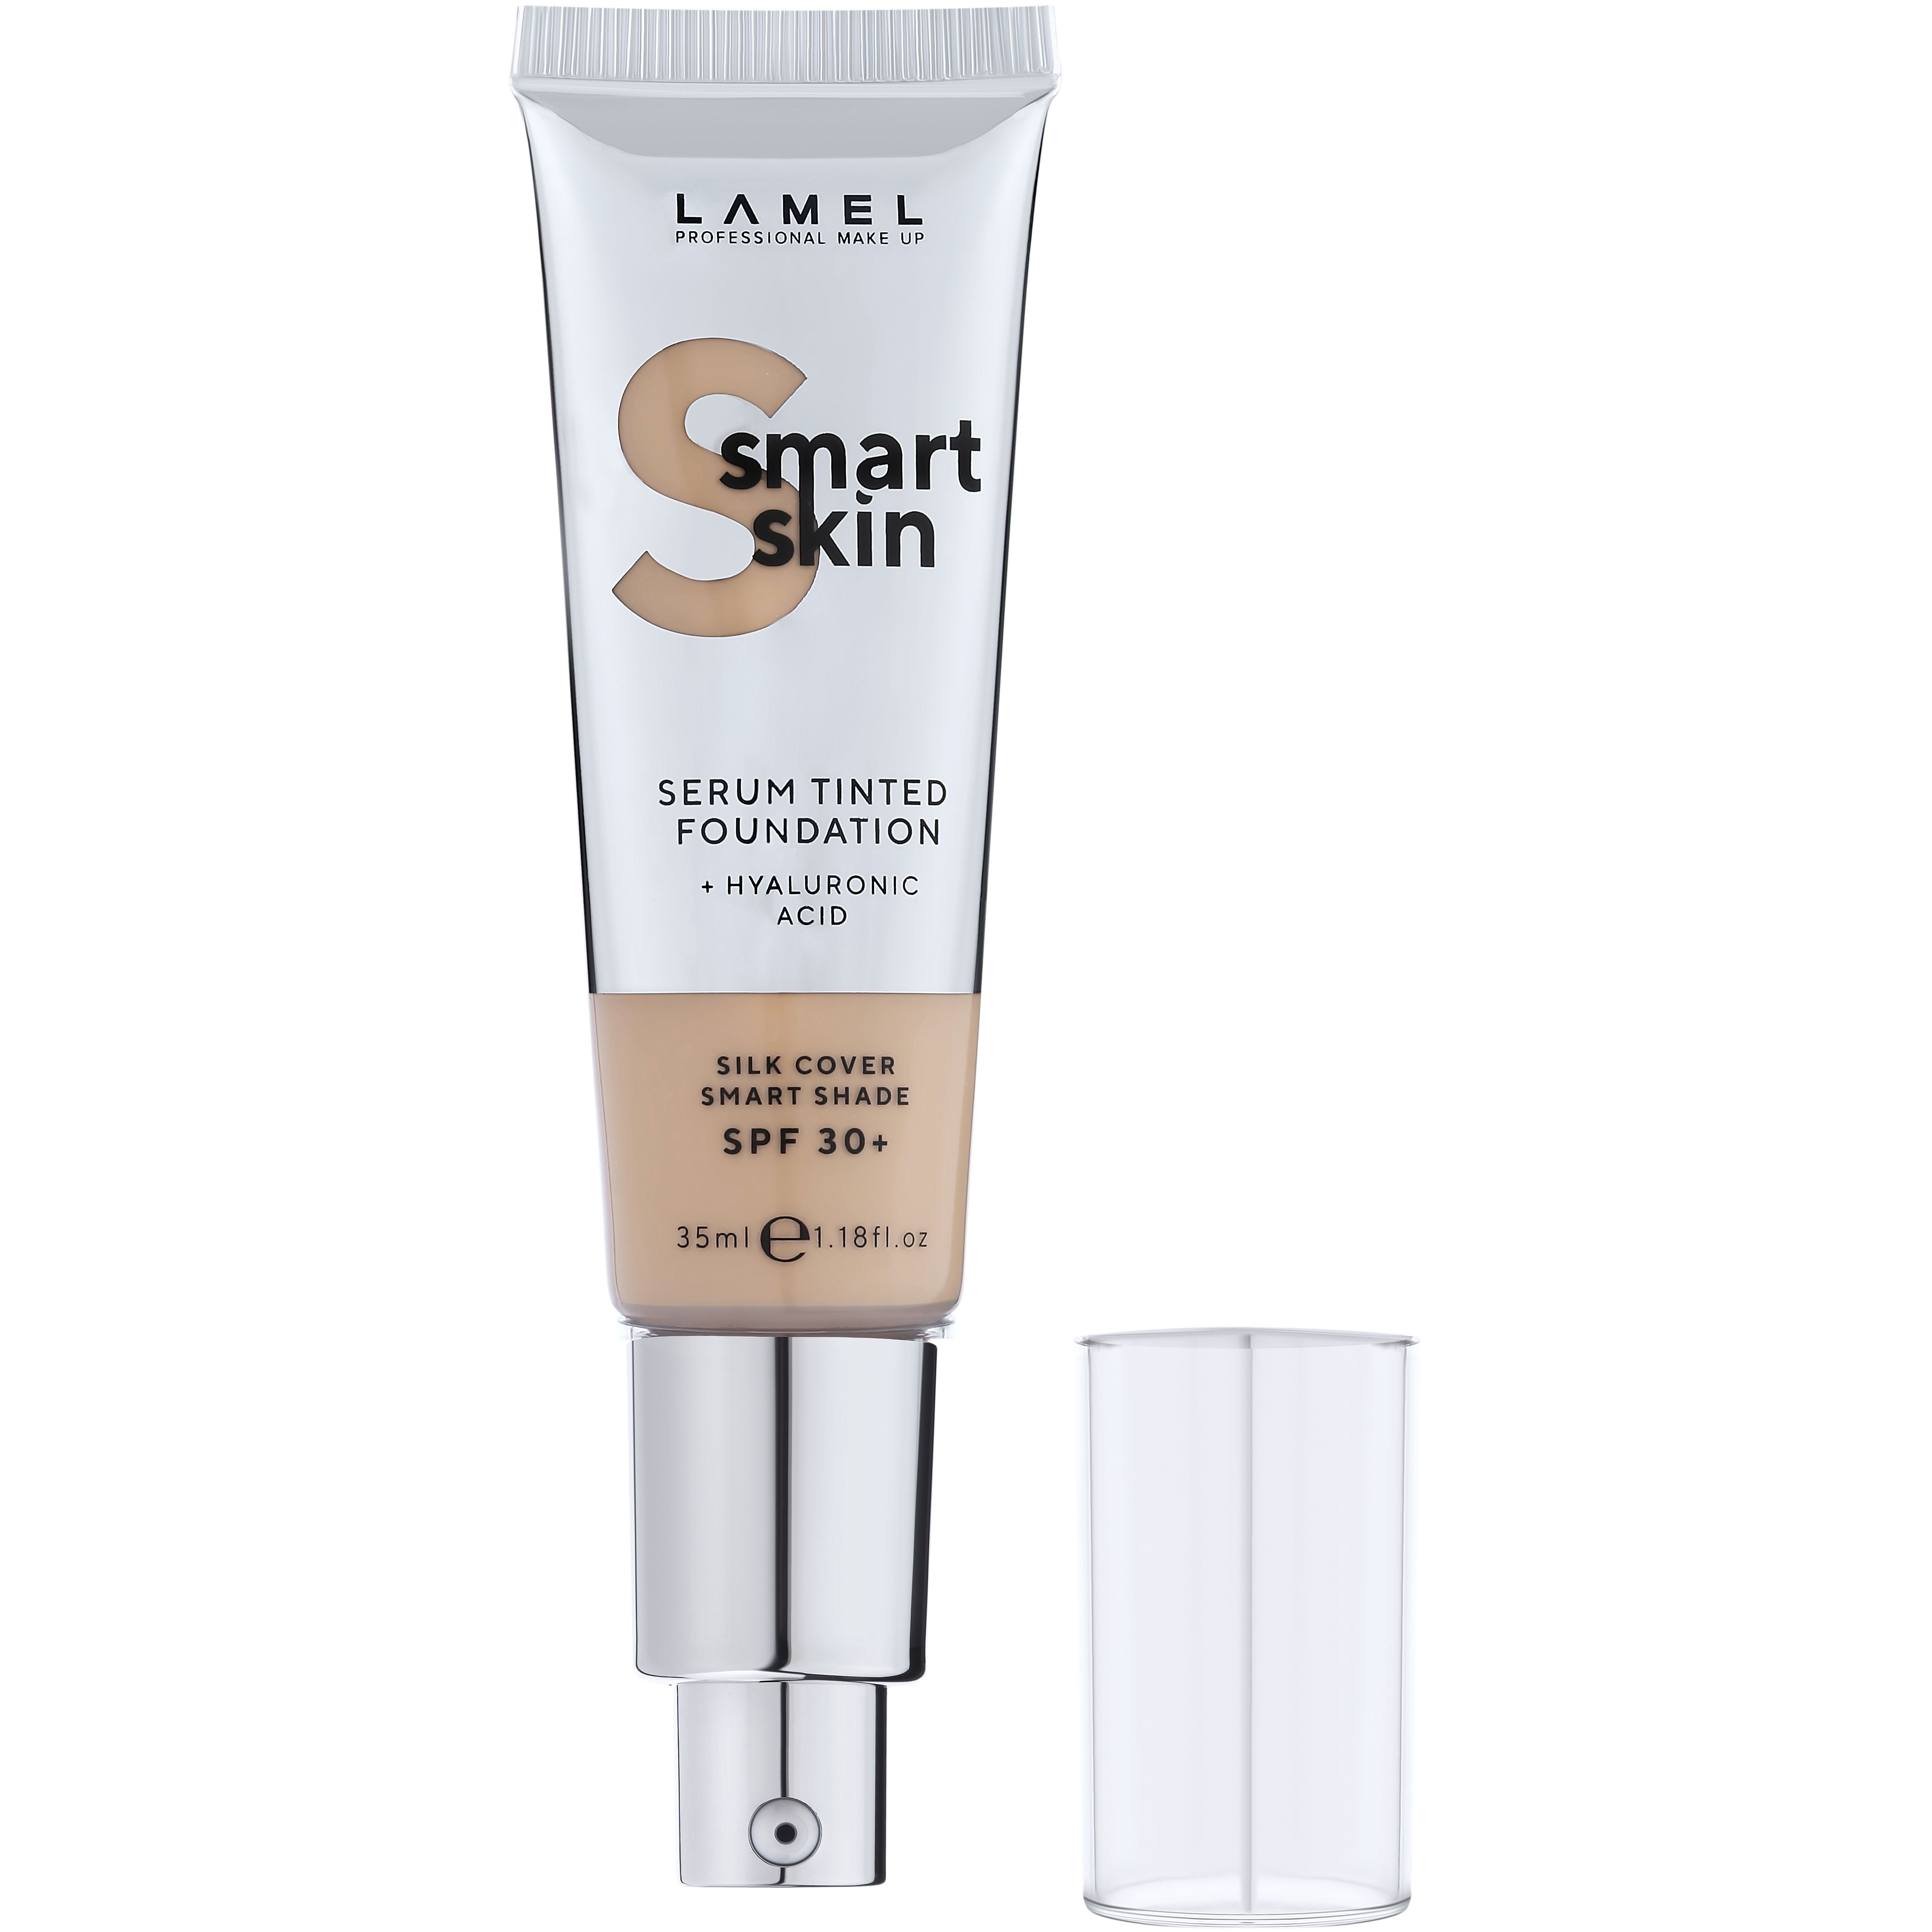 Тональная основа-сыворотка Lamel Smart Skin Serum Tinted Foundation тон 403, 35 мл - фото 3